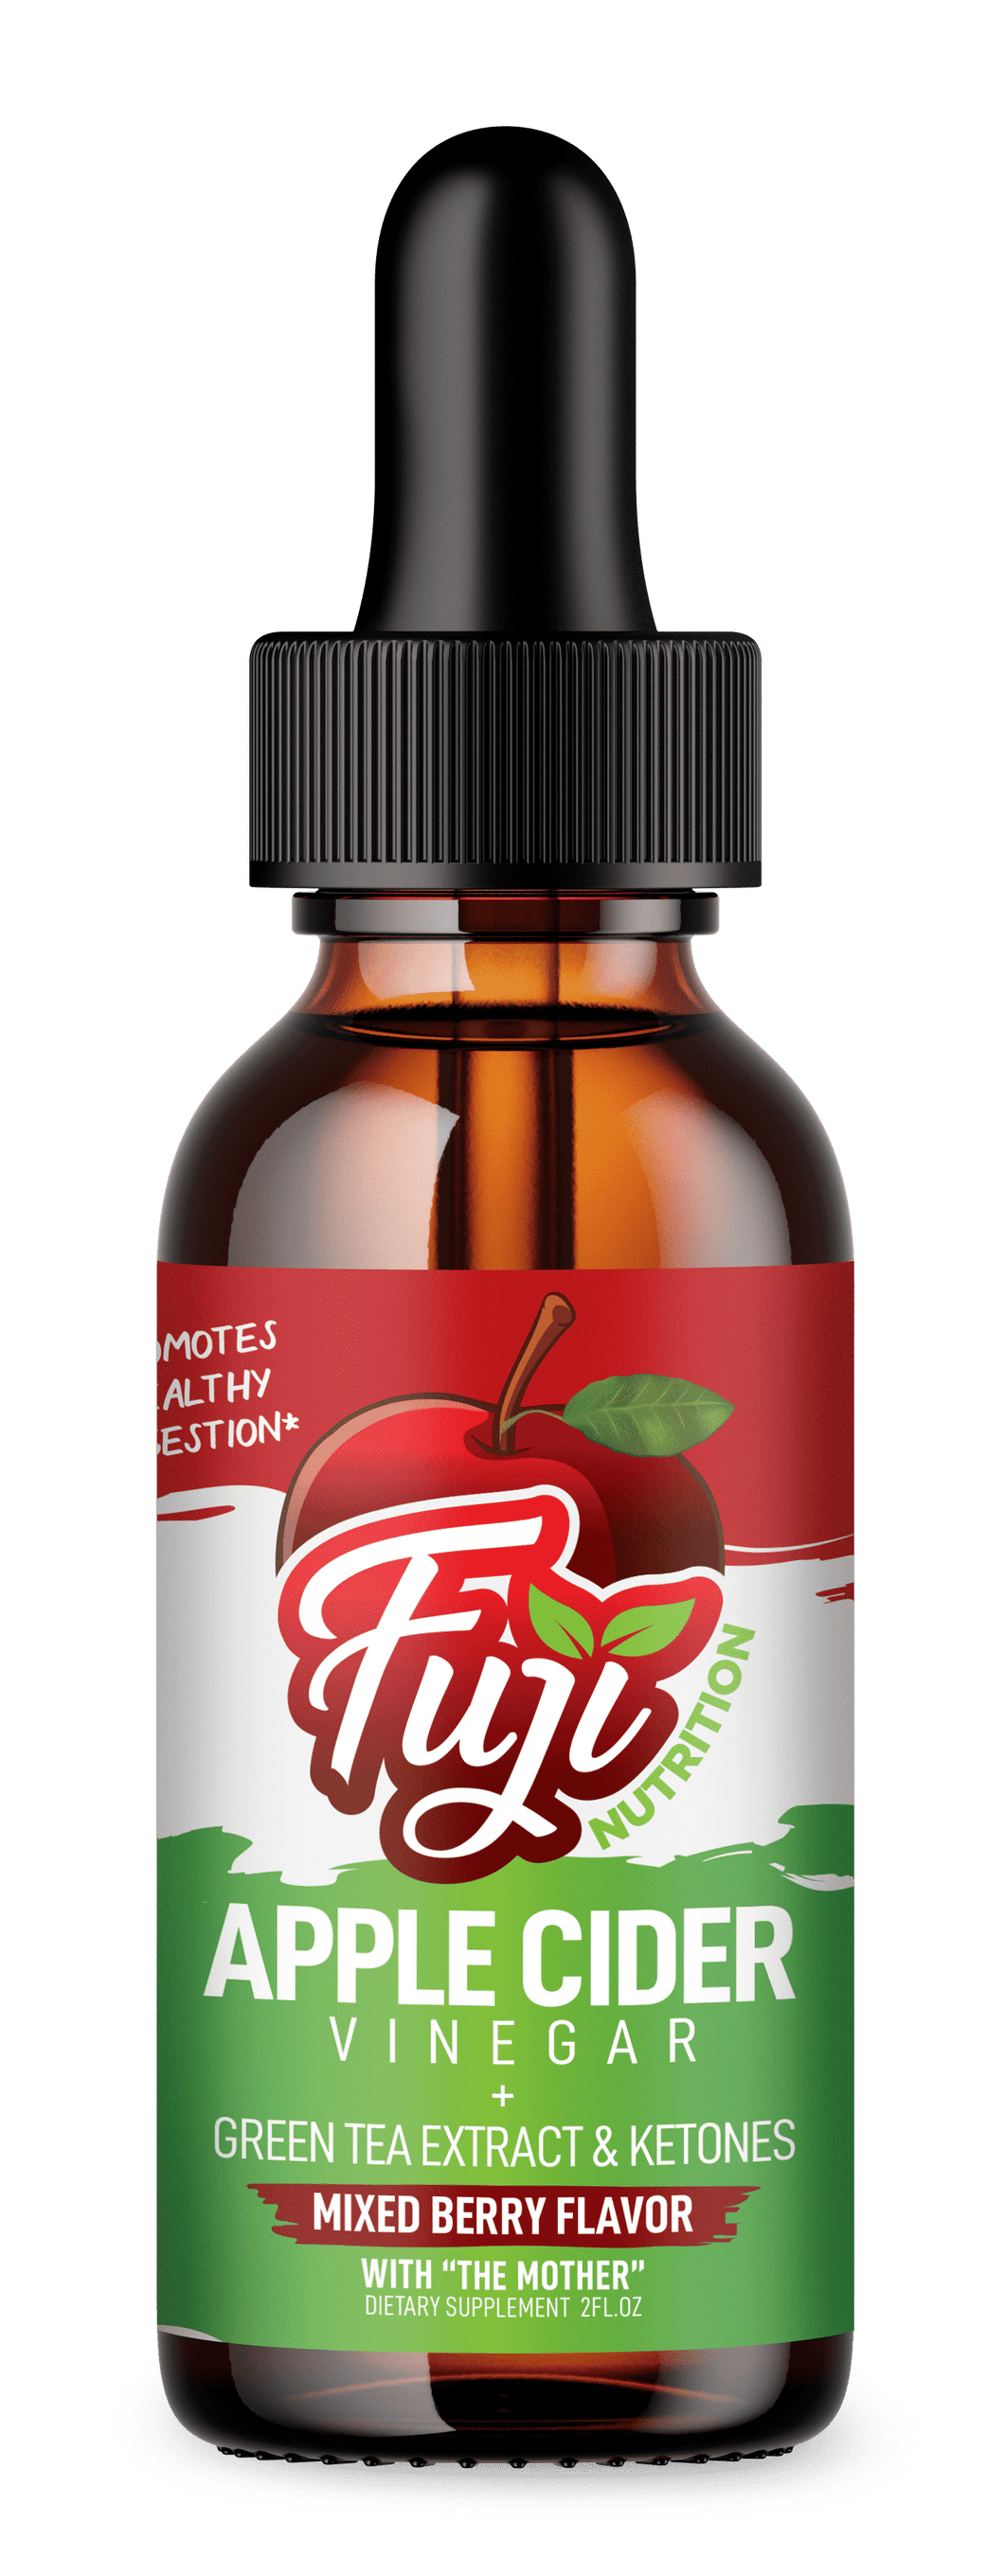 Apple Cider Vinegar - Digestive Support